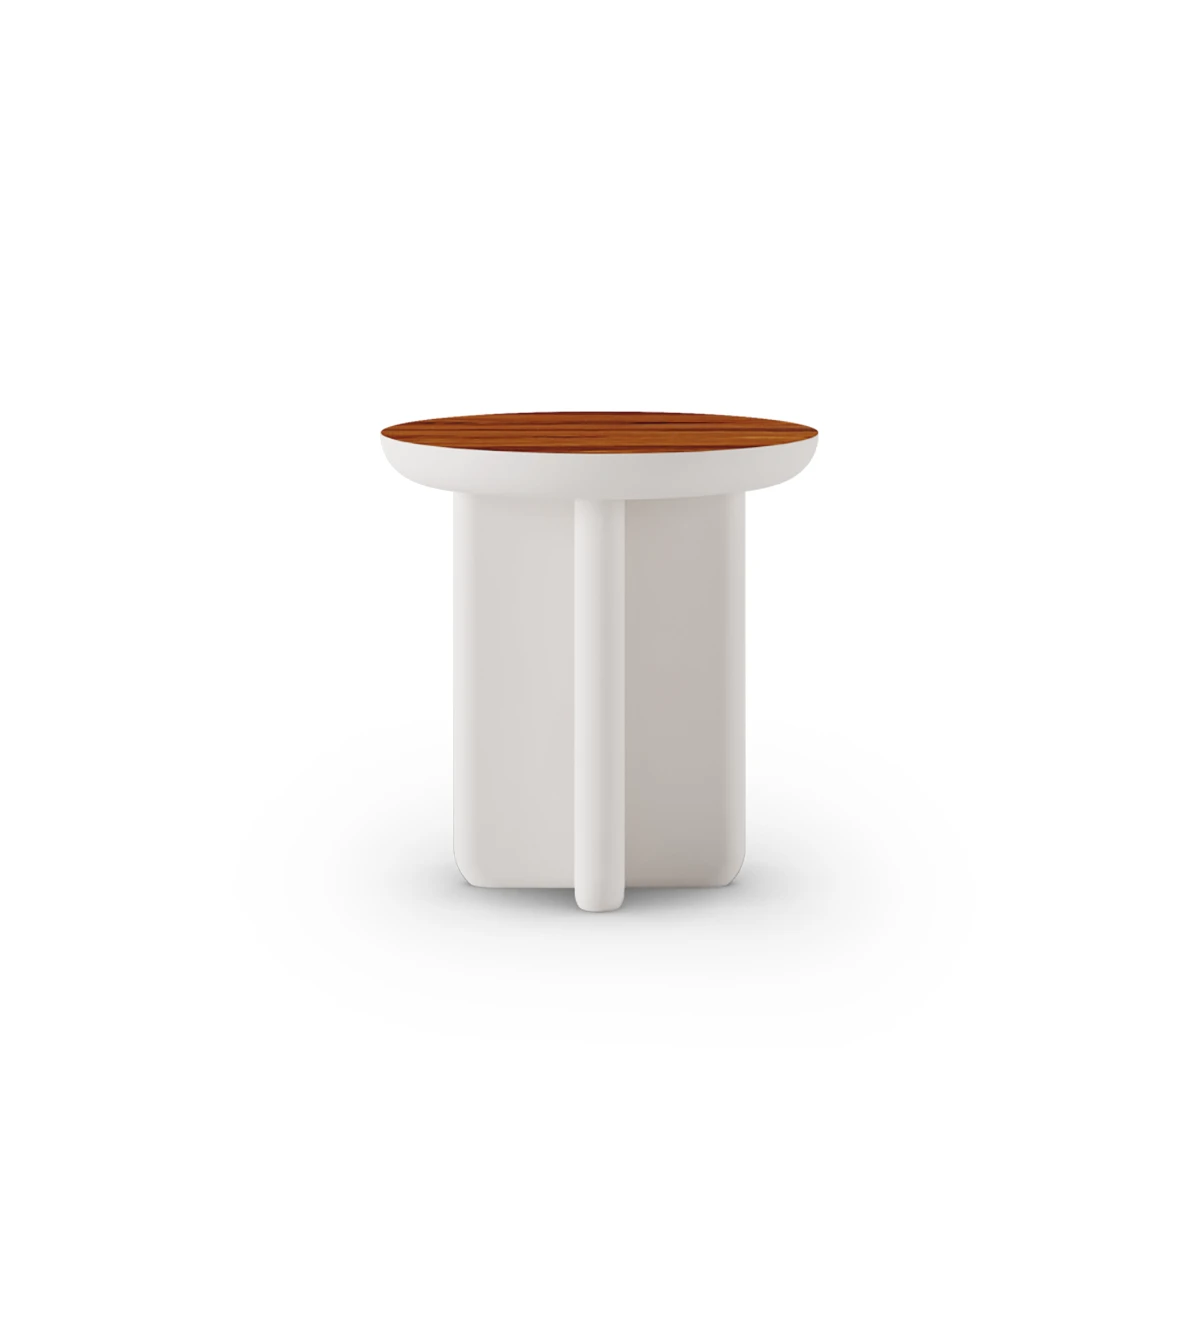 Mesa de apoio Mónaco redonda, tampo em palissandro alto brilho, pé lacado a pérola, Ø 45 cm.